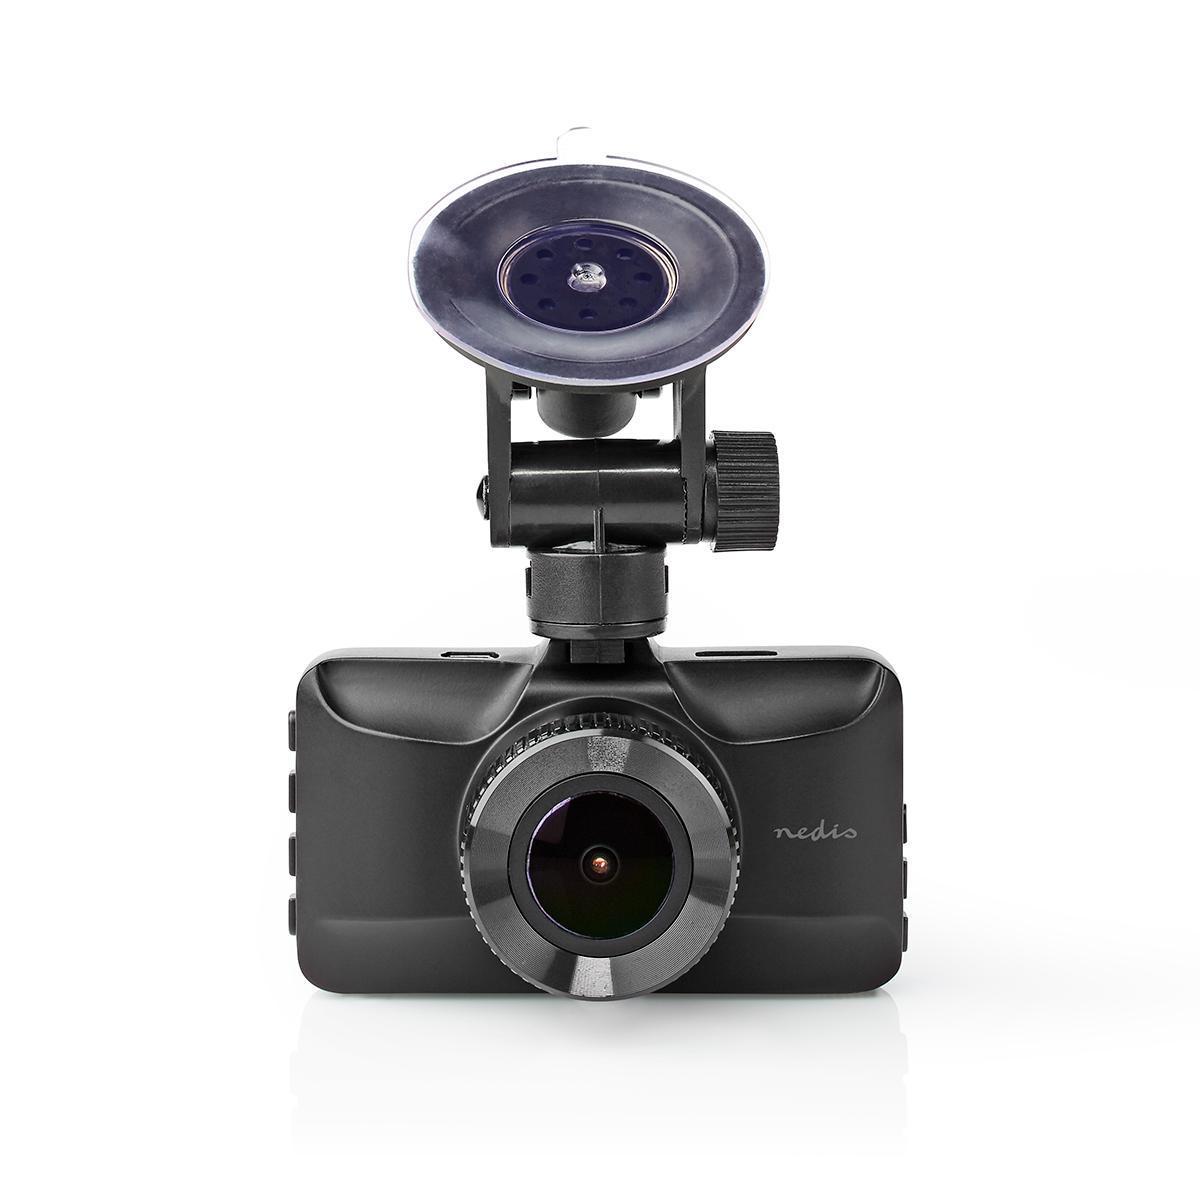 Caméra embarquée (dashcam) 1080p@30fps 12.0 mpixel  3.0 " capteur de stationnement  détection de mouvement  vision nocturne